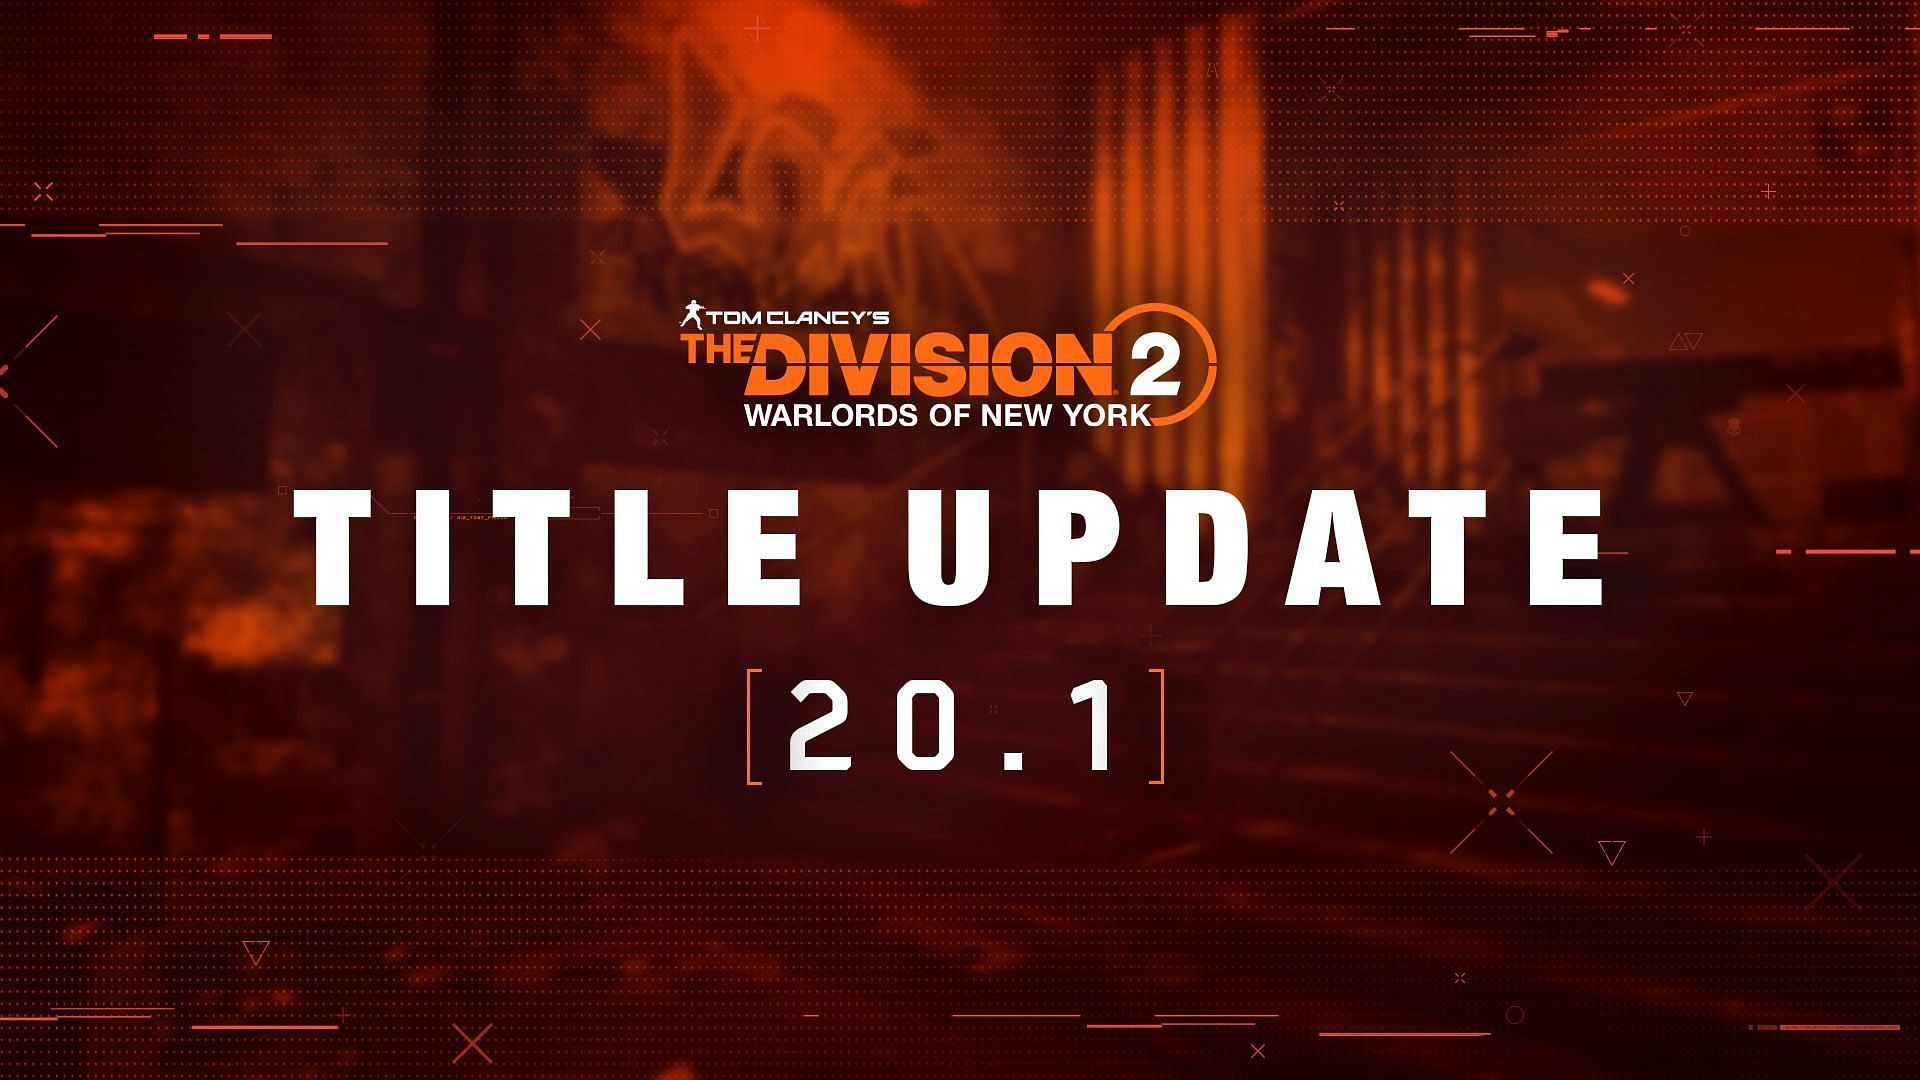 TU 20.1 in The Division 2 (Image via Ubisoft) 